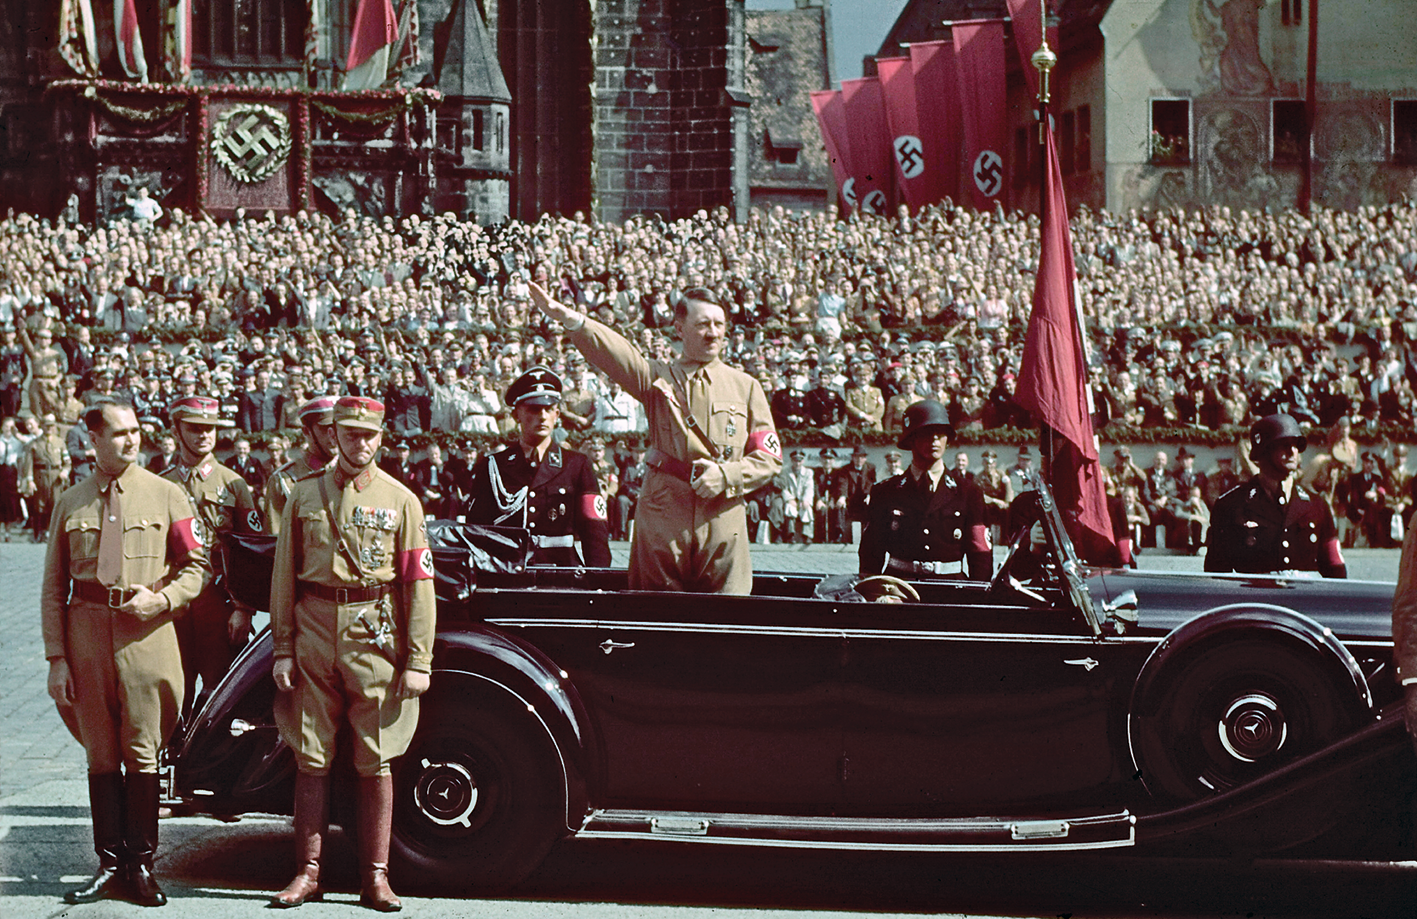 Fotografia. Adolf Hitler, homem de cabelos escuros penteados de lado e bigode escuro e curto. Uma das mãos está apoiada no cinto e a outra está esticada diagonalmente para frente, em uma saudação. Ele veste um macacão bege com uma braçadeira vermelha com a suástica desenhada. Está em pé, dentro de um carro. Perto dele, alguns militares. Ao fundo, uma multidão aglomerada e diversas bandeiras com a suástica  nazista.